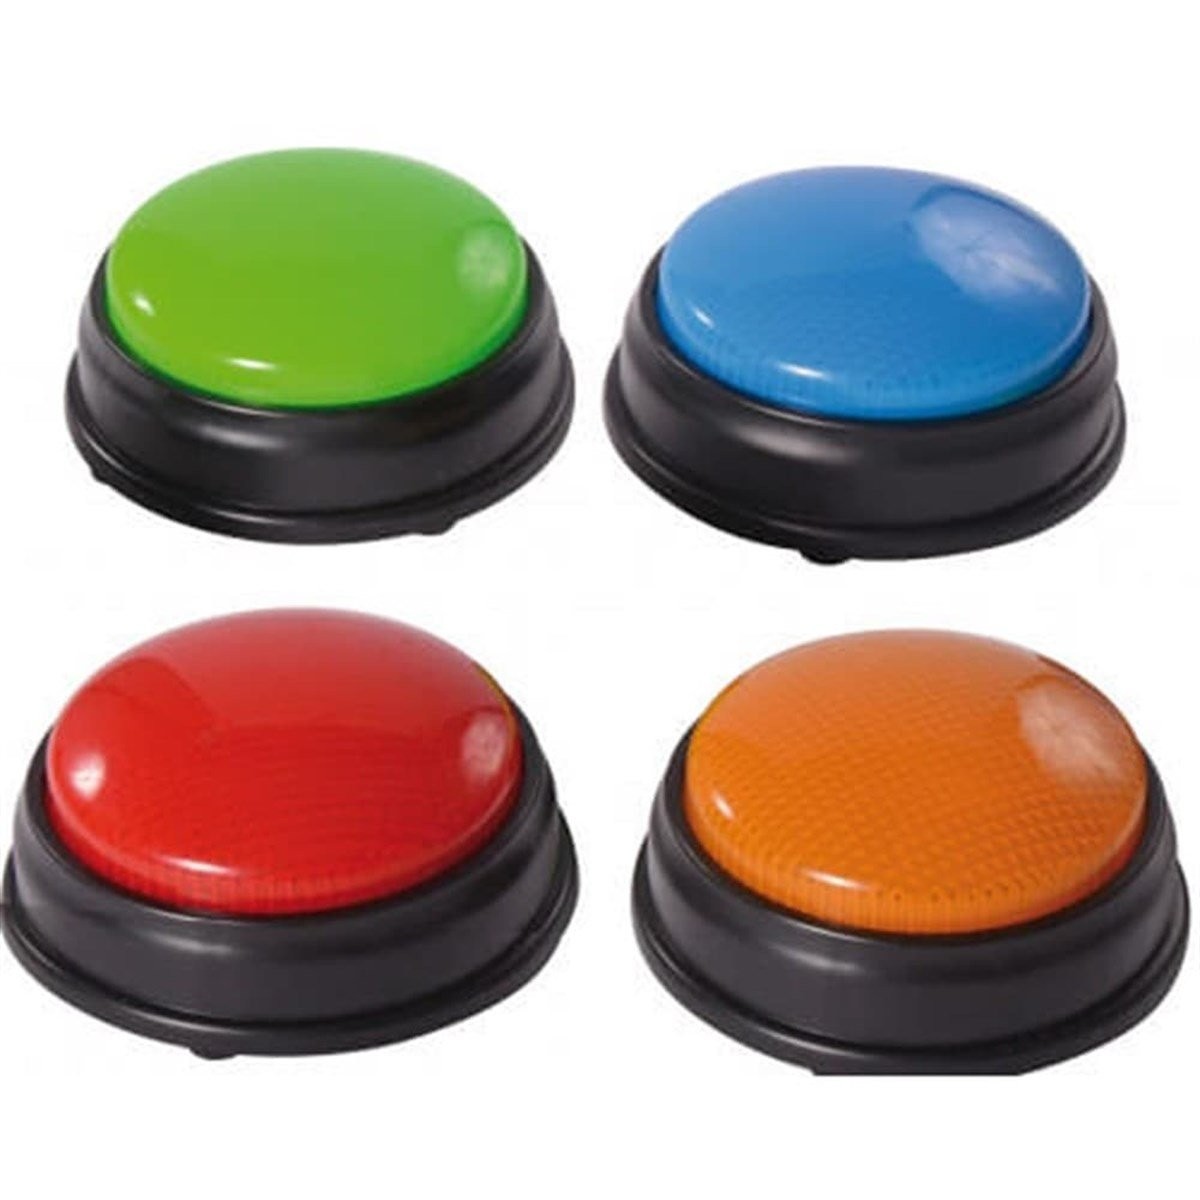 İşitsel Bellek 4 Renkli Cevaplama Butonları